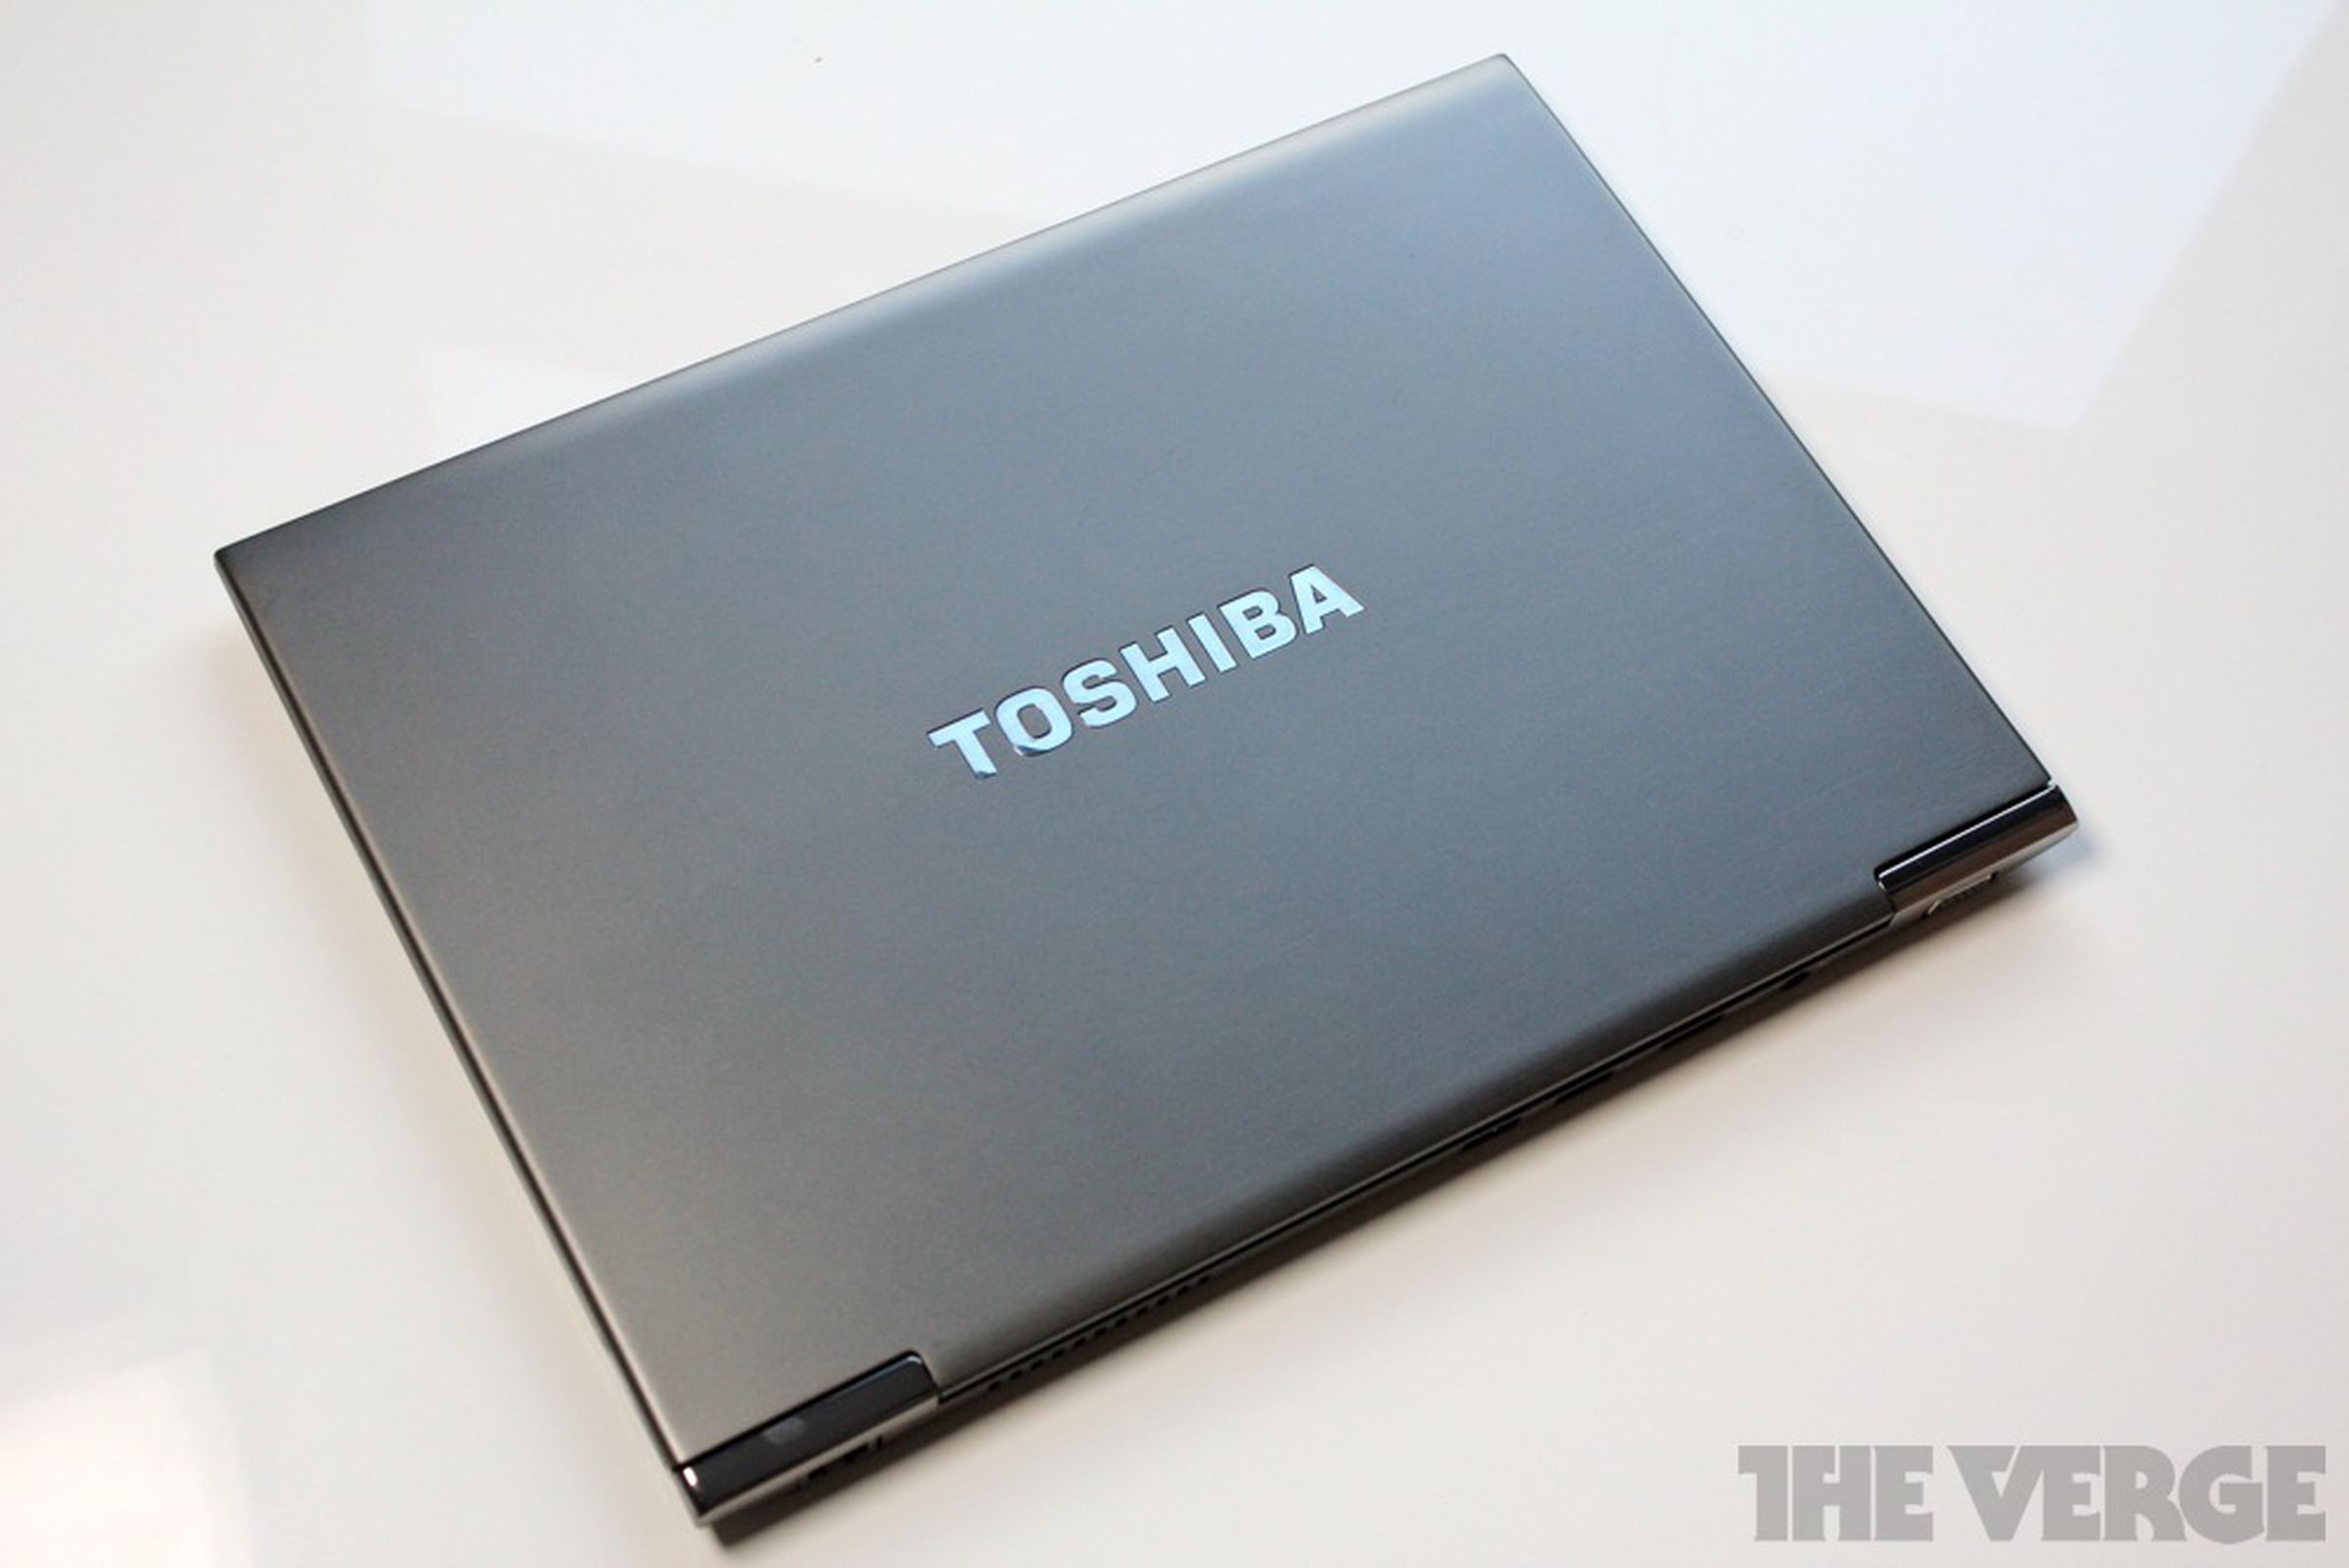 Toshiba Portege Z835 review photos